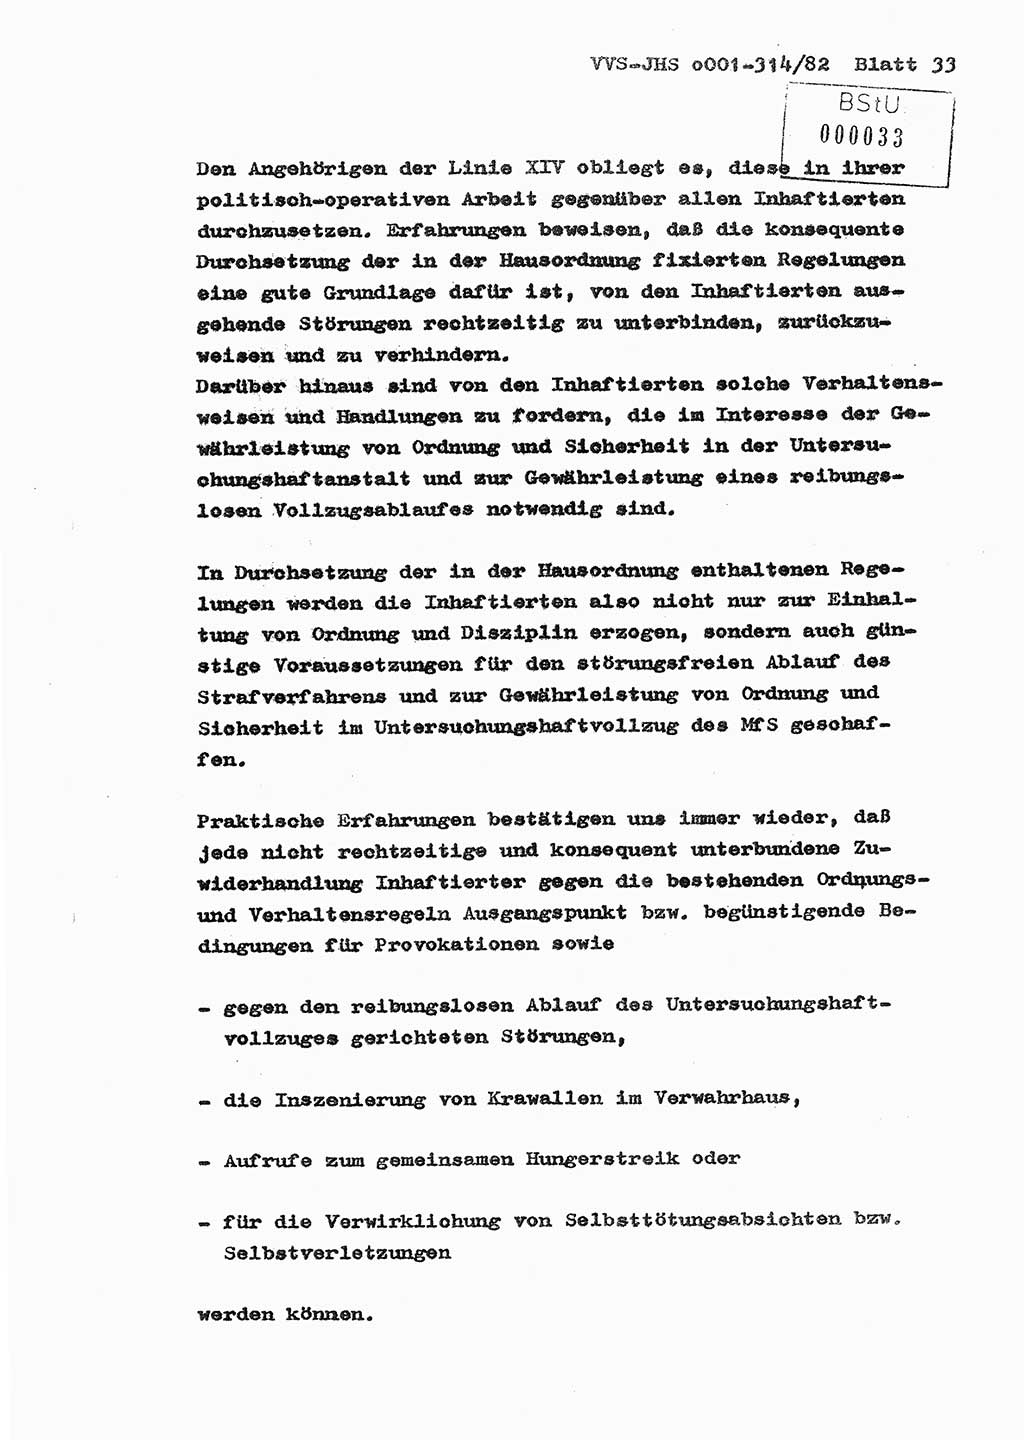 Diplomarbeit Hauptmann Wolfgang Schröder (Abt. ⅩⅣ), Ministerium für Staatssicherheit (MfS) [Deutsche Demokratische Republik (DDR)], Juristische Hochschule (JHS), Vertrauliche Verschlußsache (VVS) o001-314/82, Potsdam 1982, Seite 33 (Dipl.-Arb. MfS DDR JHS VVS o001-314/82 1982, S. 33)